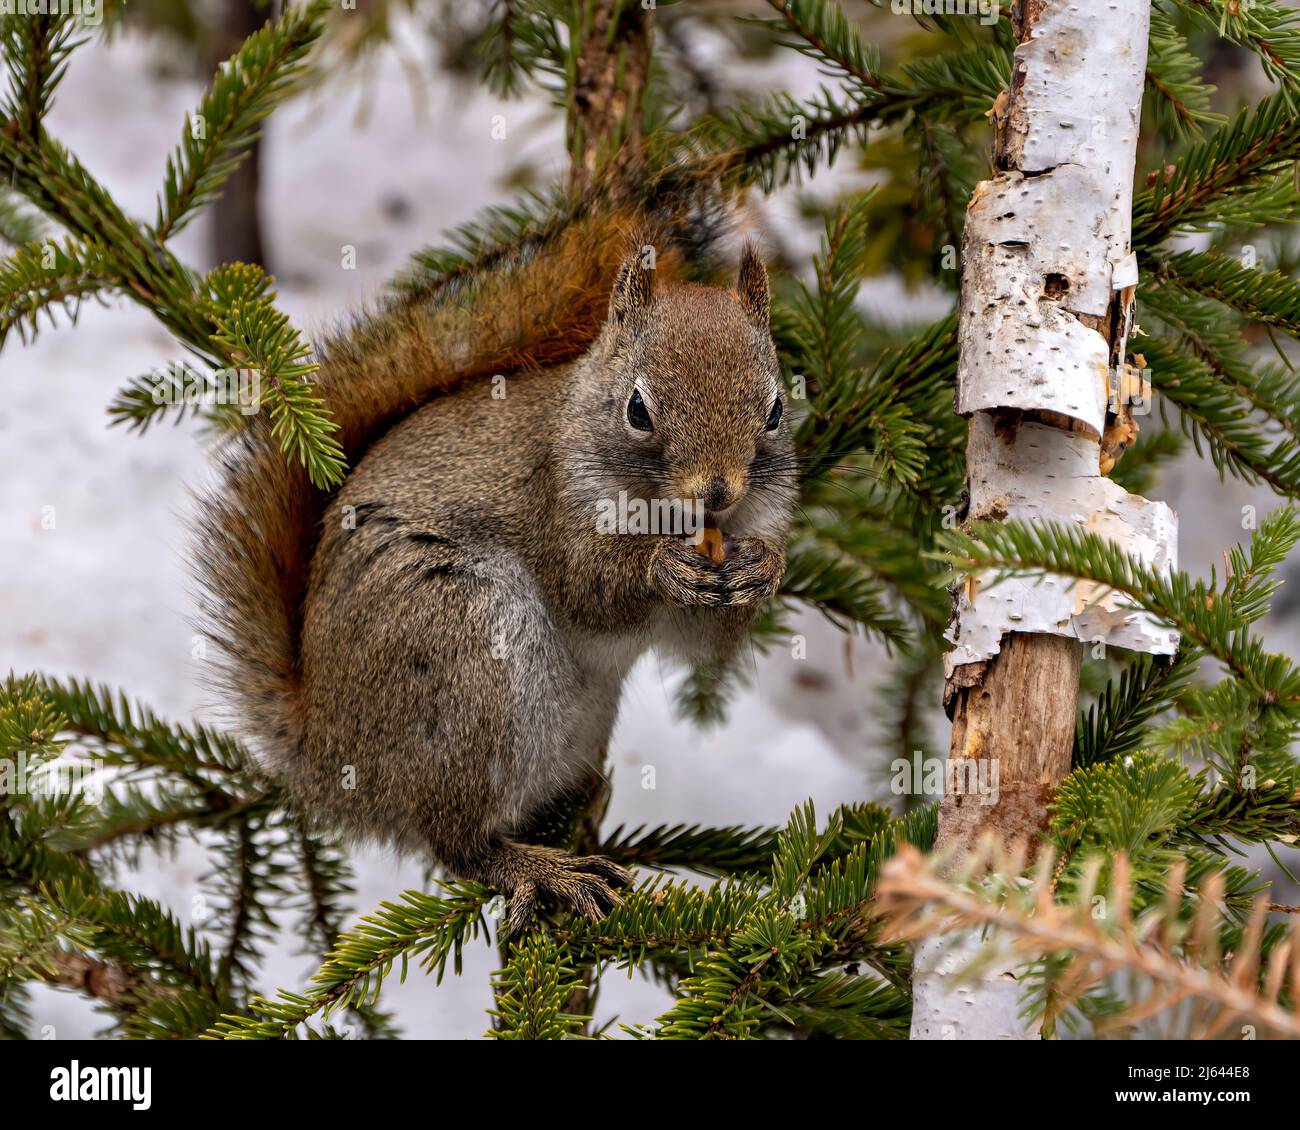 Eichhörnchen sitzt auf einem Nadelbaum und frisst in seiner Umgebung und Umgebung eine Nuss, zeigt sein braunes Fell und buschigen Schwanz. Stockfoto